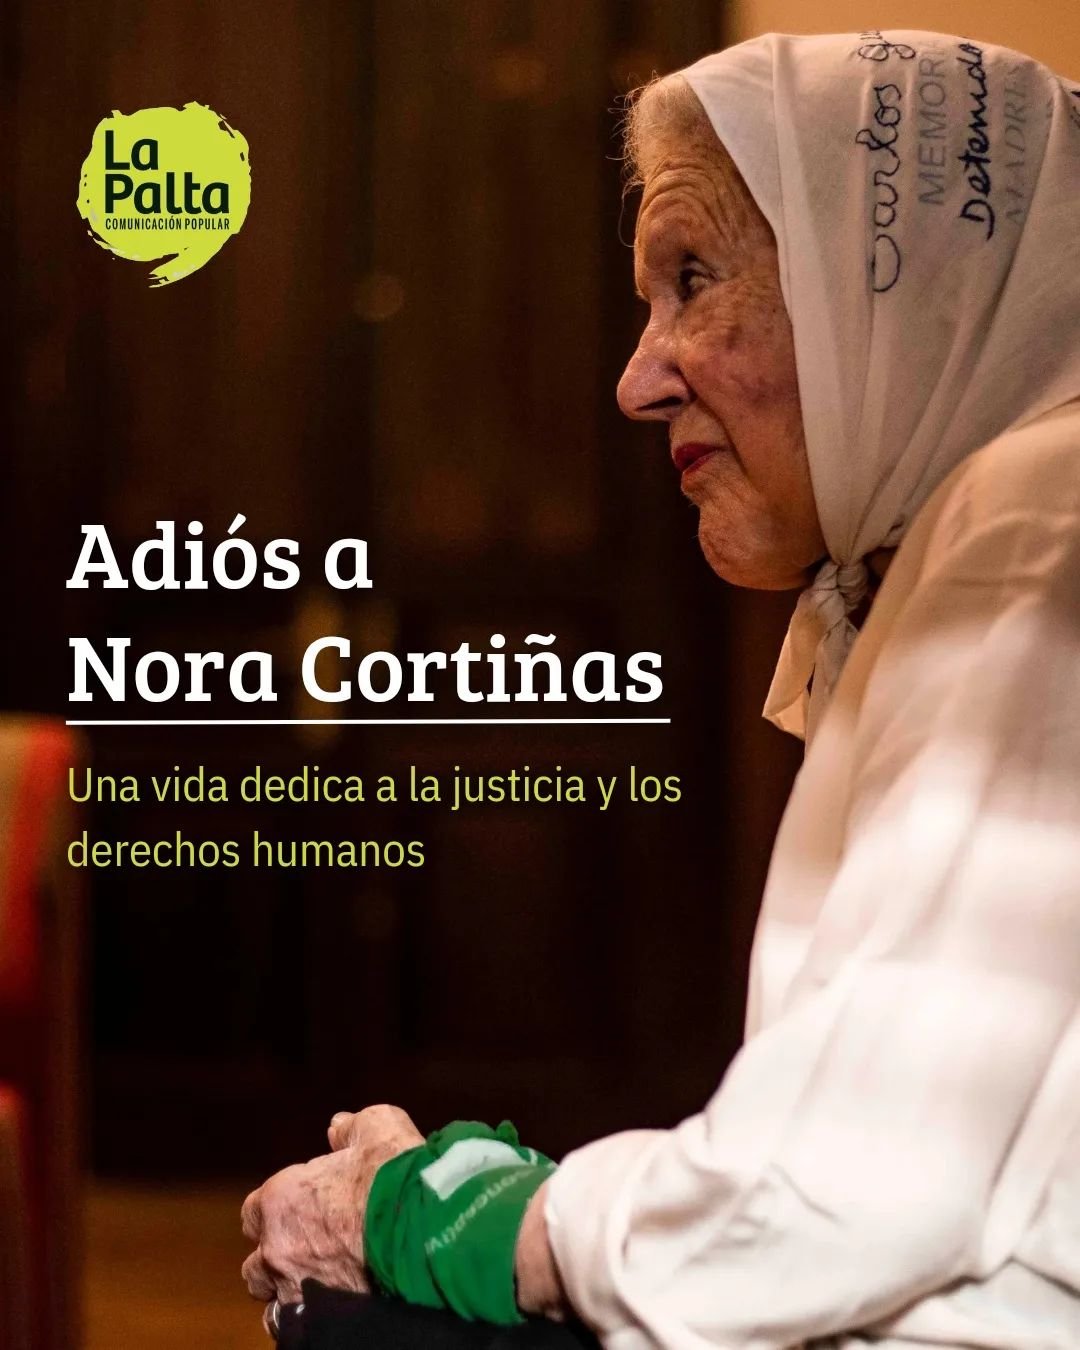 📢 Despedimos a Nora Corti&ntilde;as, una figura emblem&aacute;tica en la defensa de los derechos humanos y cofundadora de Madres de Plaza de Mayo. ✊

💔 Su fuerza, ternura y compromiso inquebrantable nos dejaron un legado de justicia y dignidad. Fue